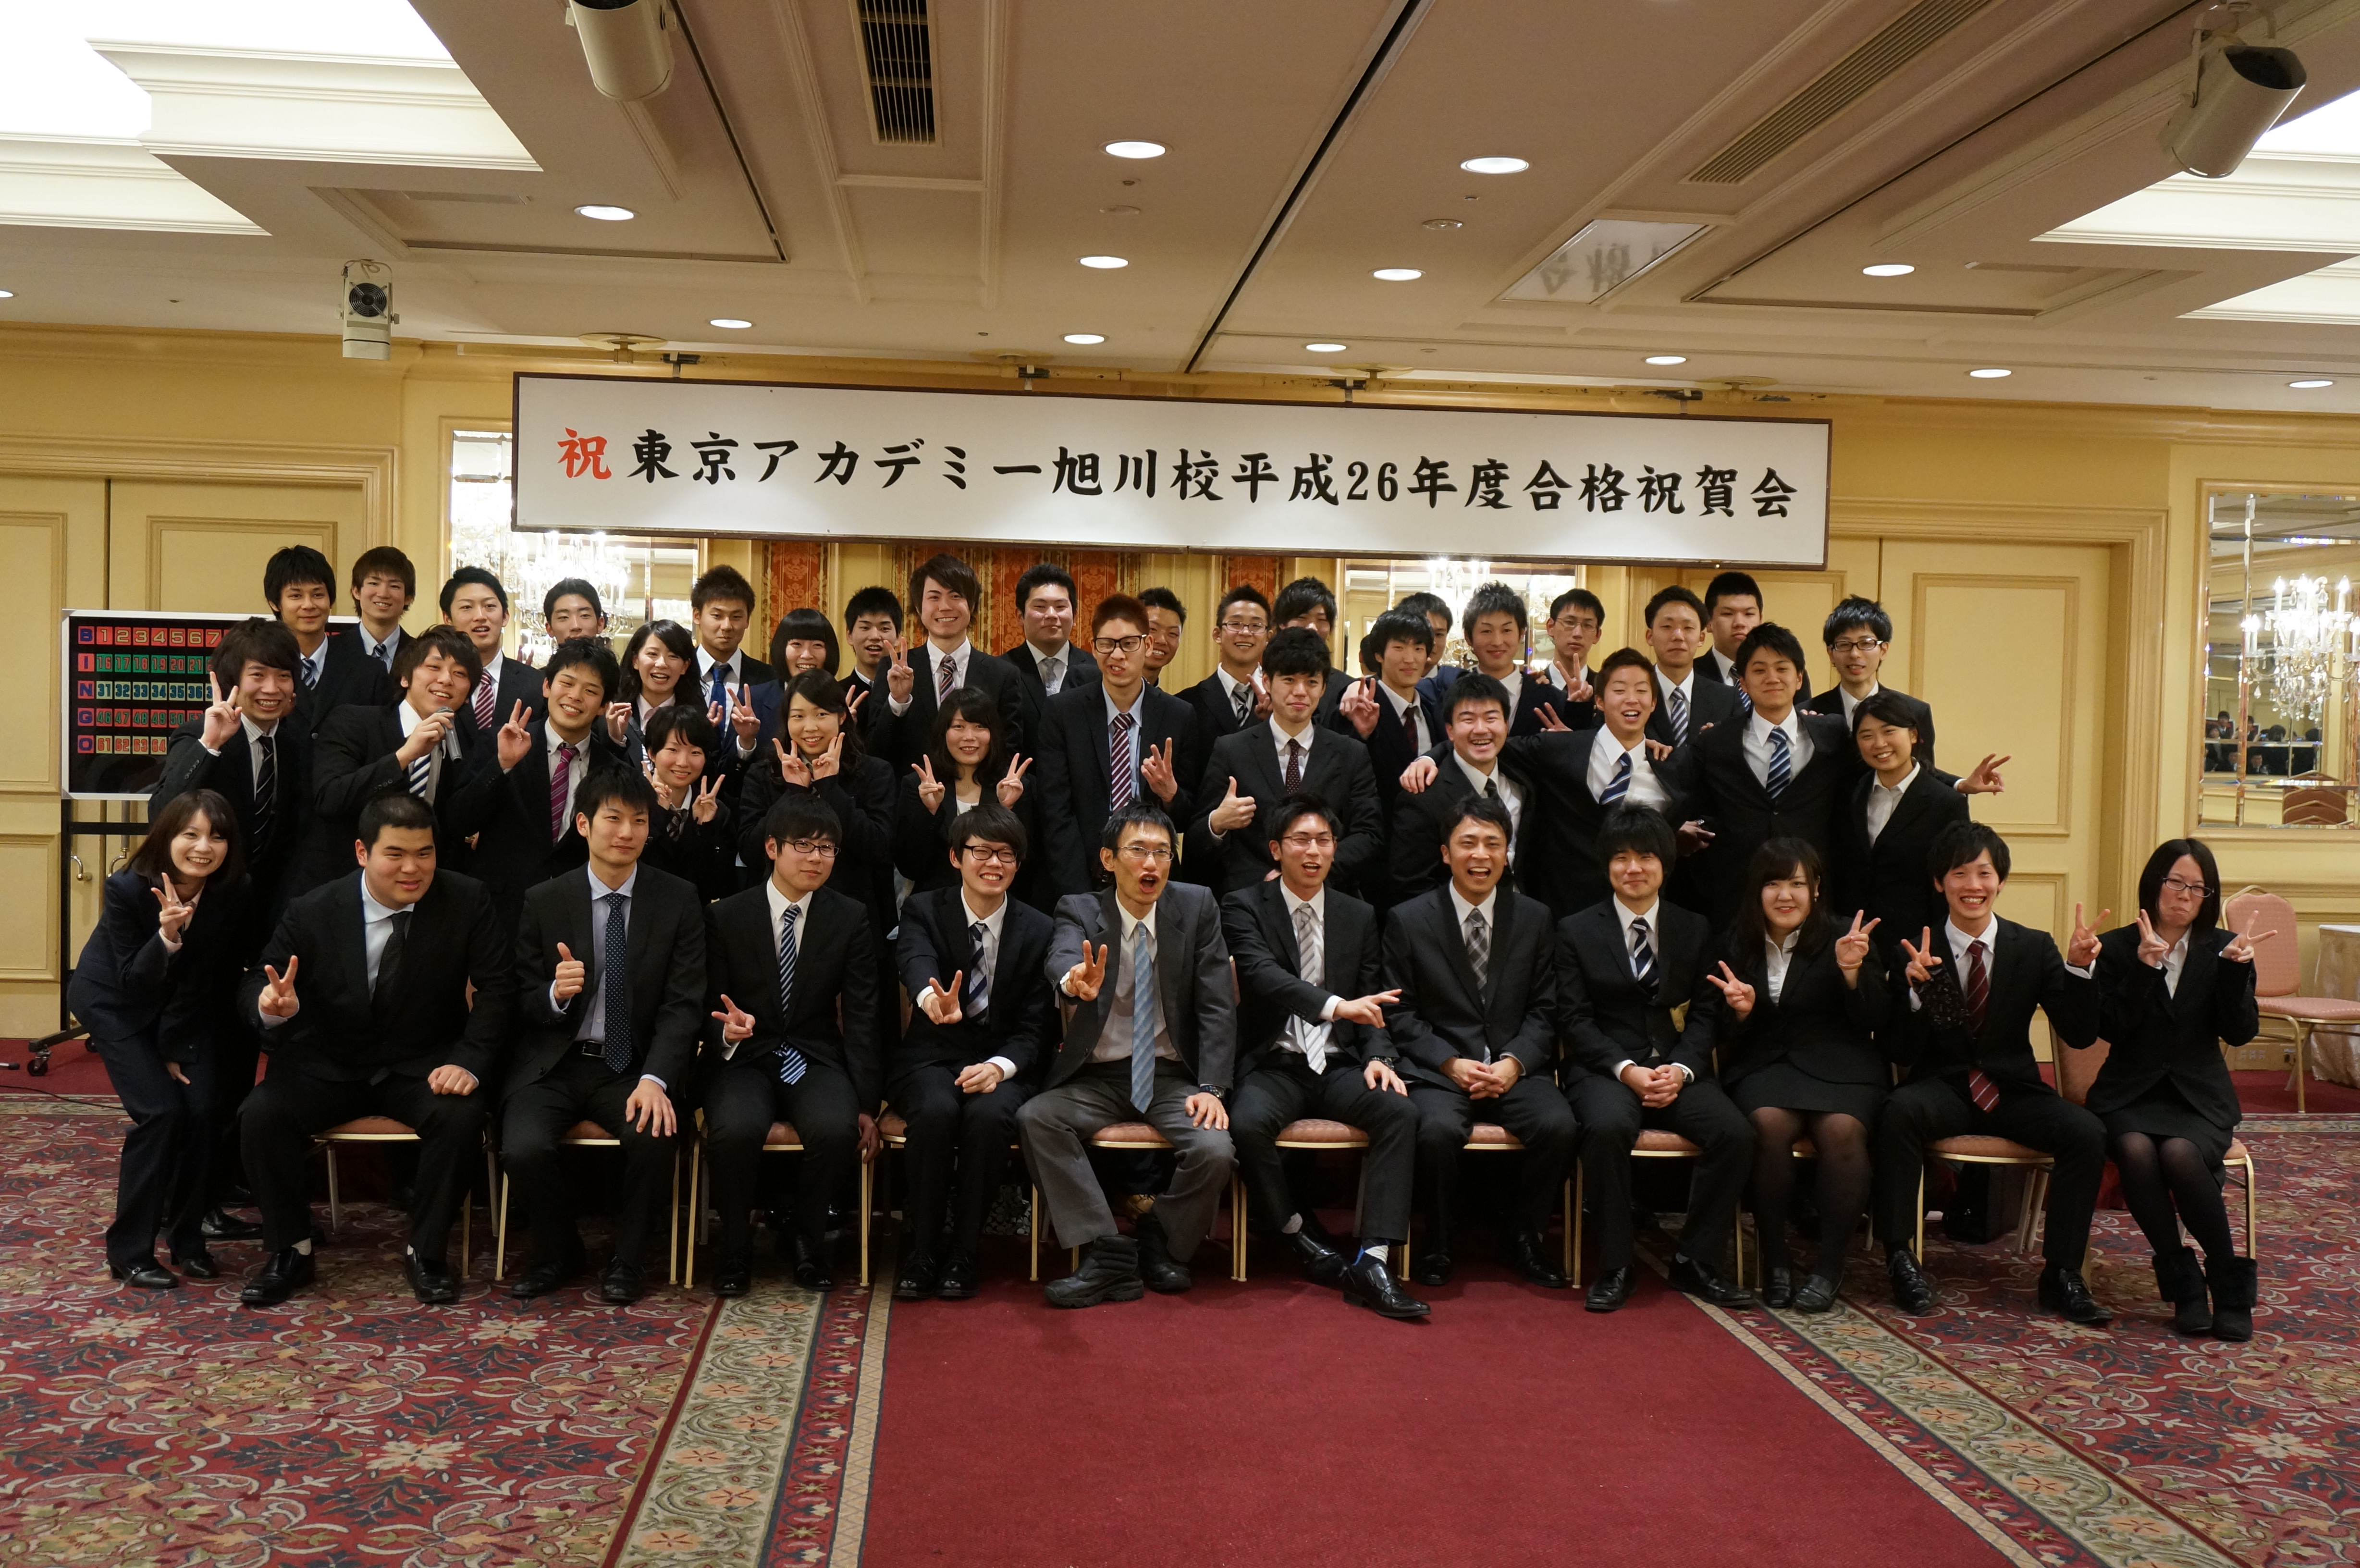 年末年始の営業 合格祝賀会 東京アカデミー旭川校 公務員 教員 各種国家試験対策 のブログ